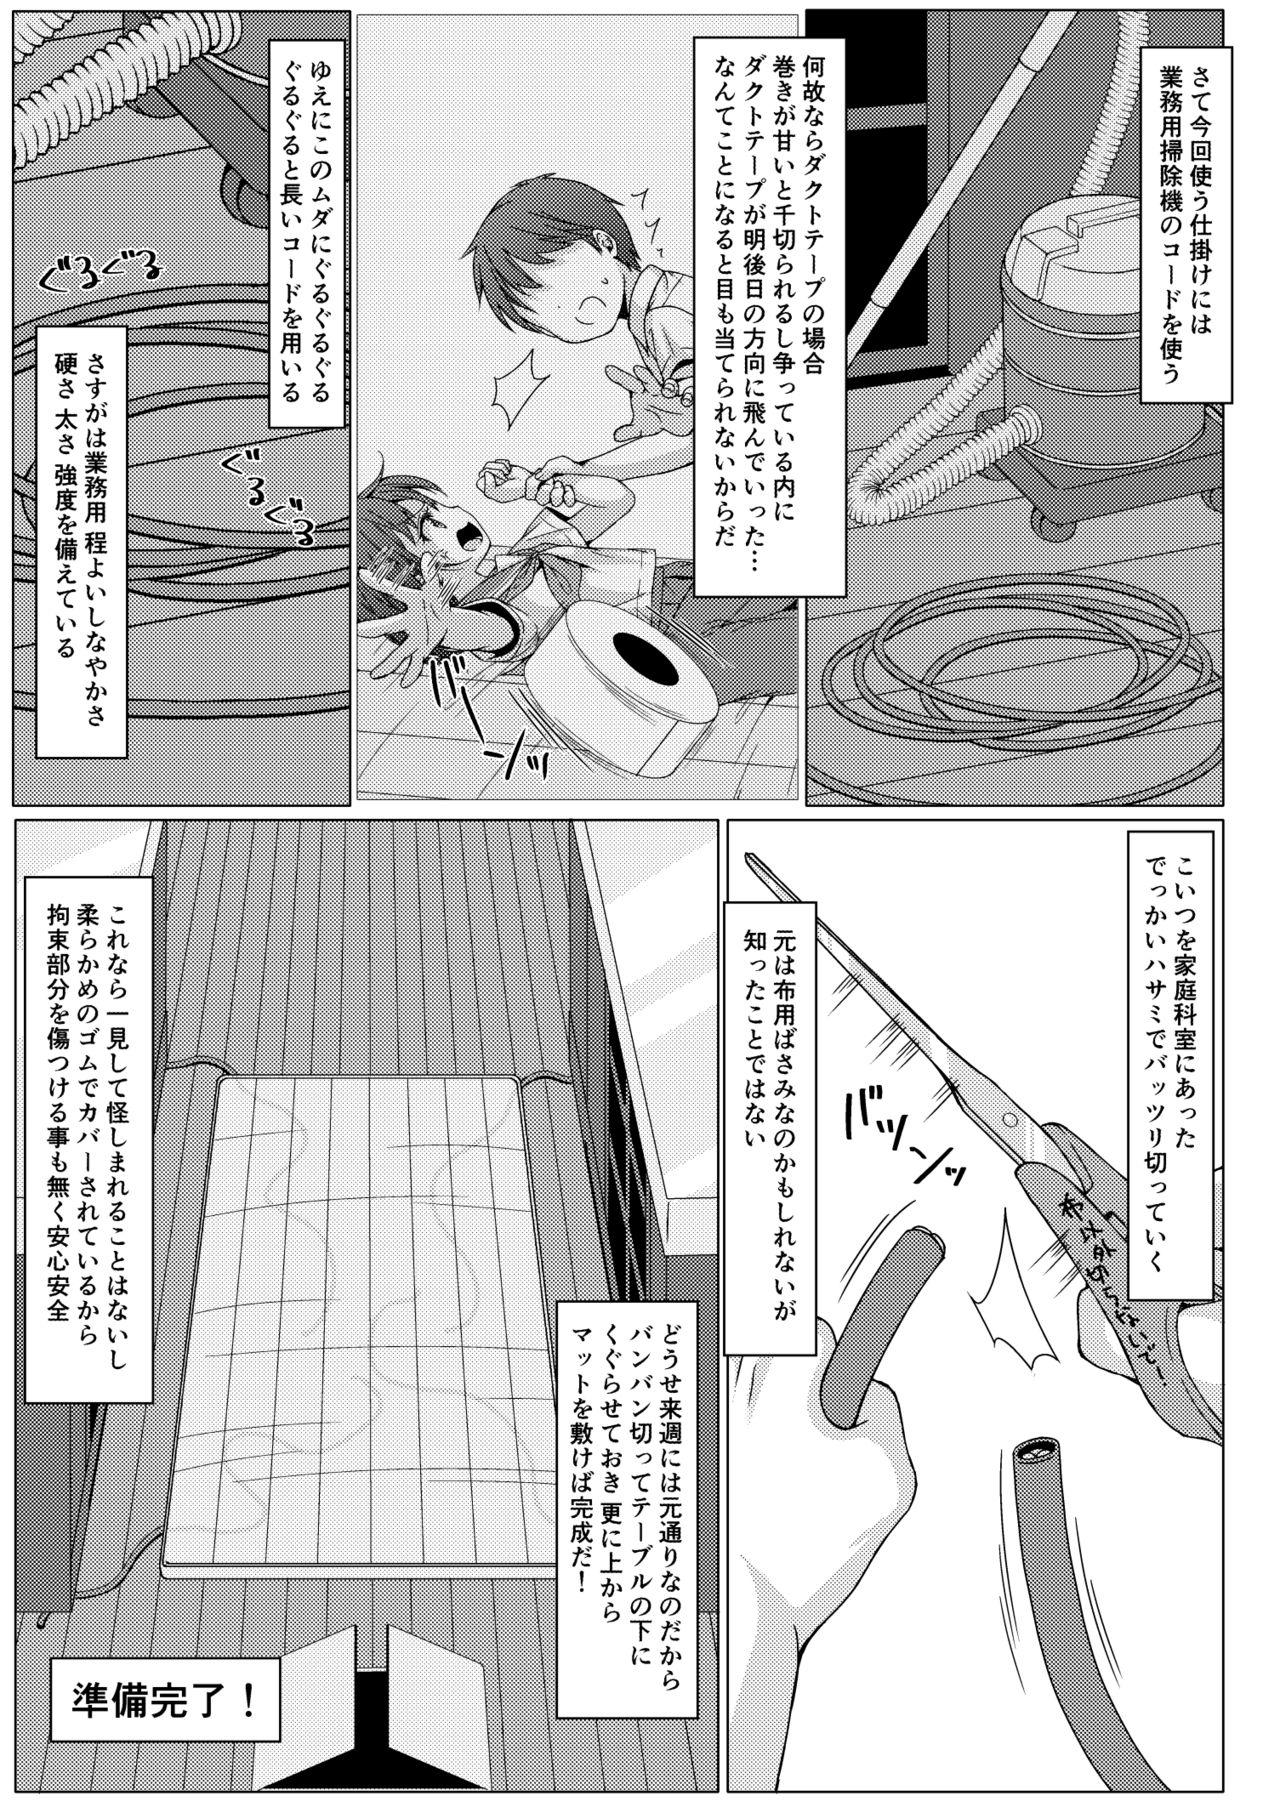 Masterbation Isshuukan de Mugen Loop Shiteru to Kigatsuita kara, Kounai ni Yaribeya Tsukutta! 2 - Original Beauty - Page 4